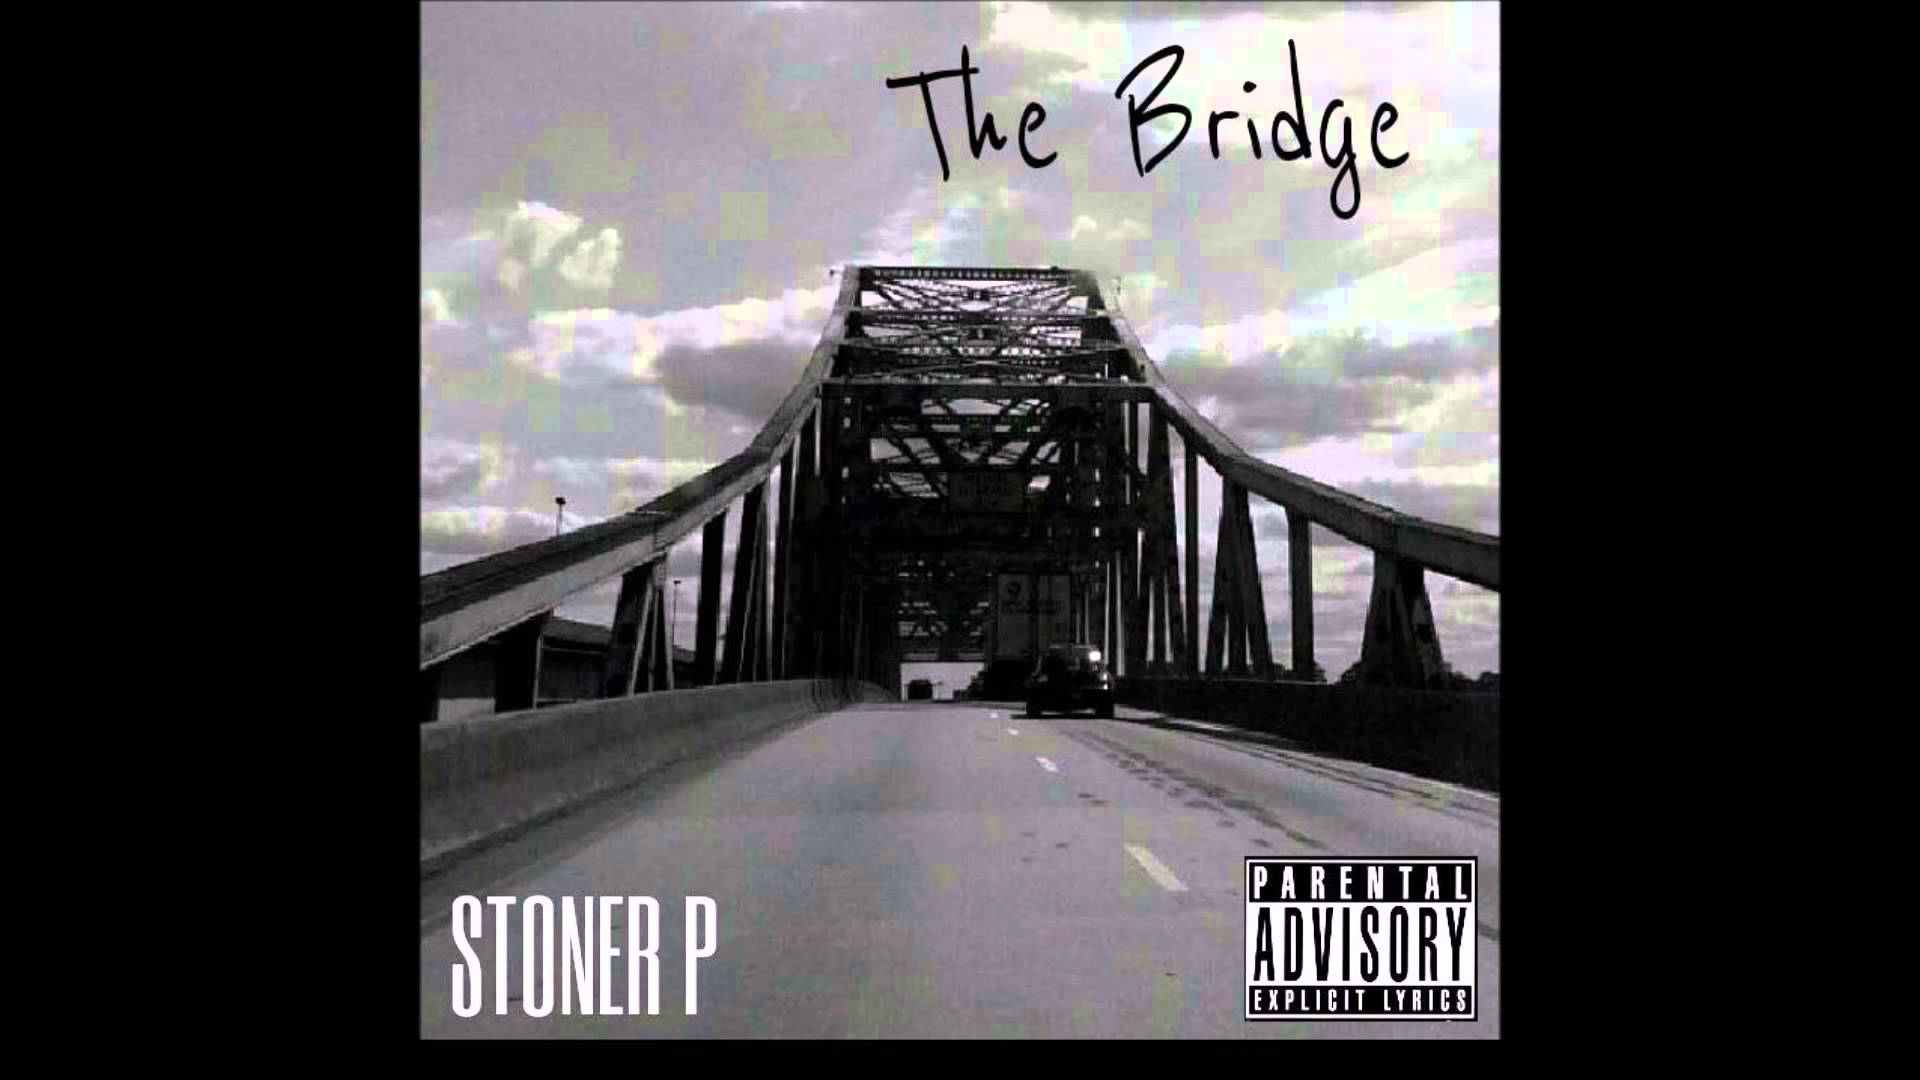 The Bridge - Stoner P - YouTube